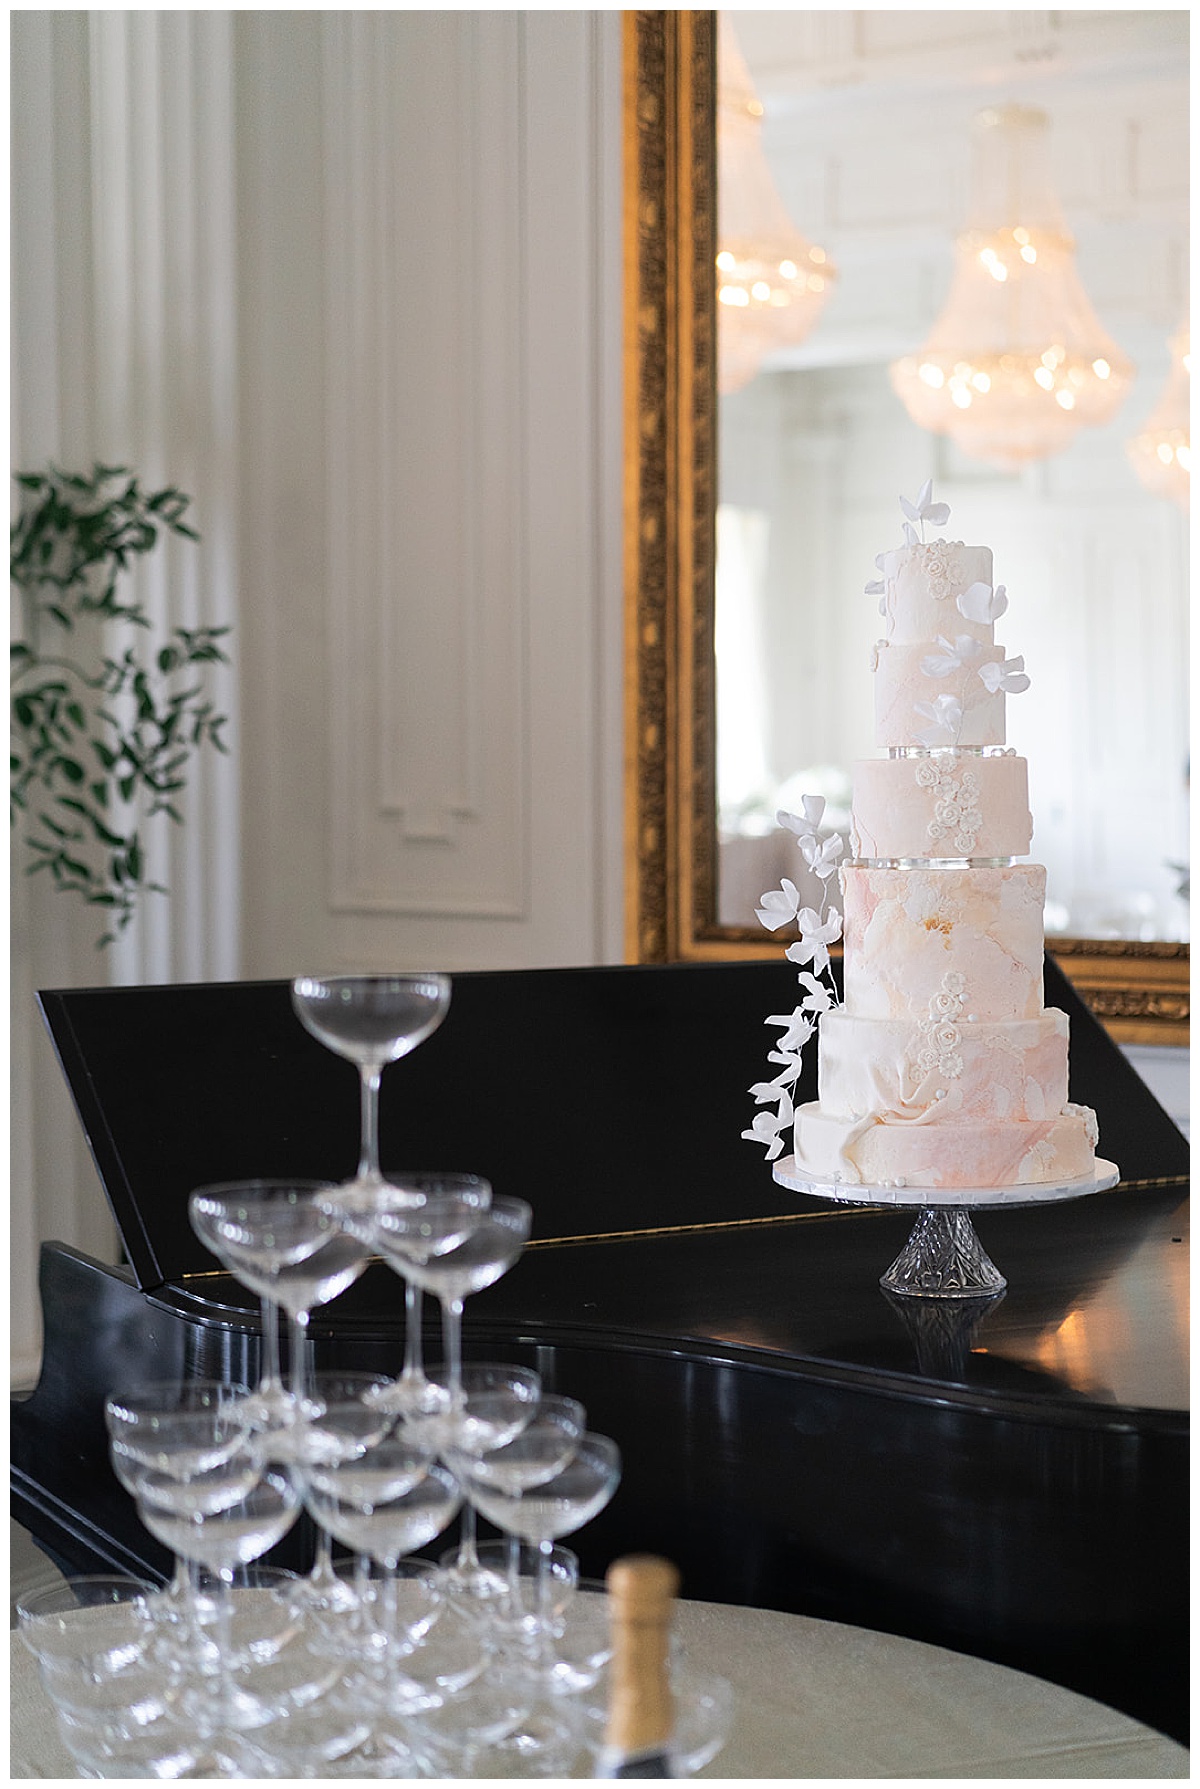 Gorgeous white wedding cake for Editorial at The Mason